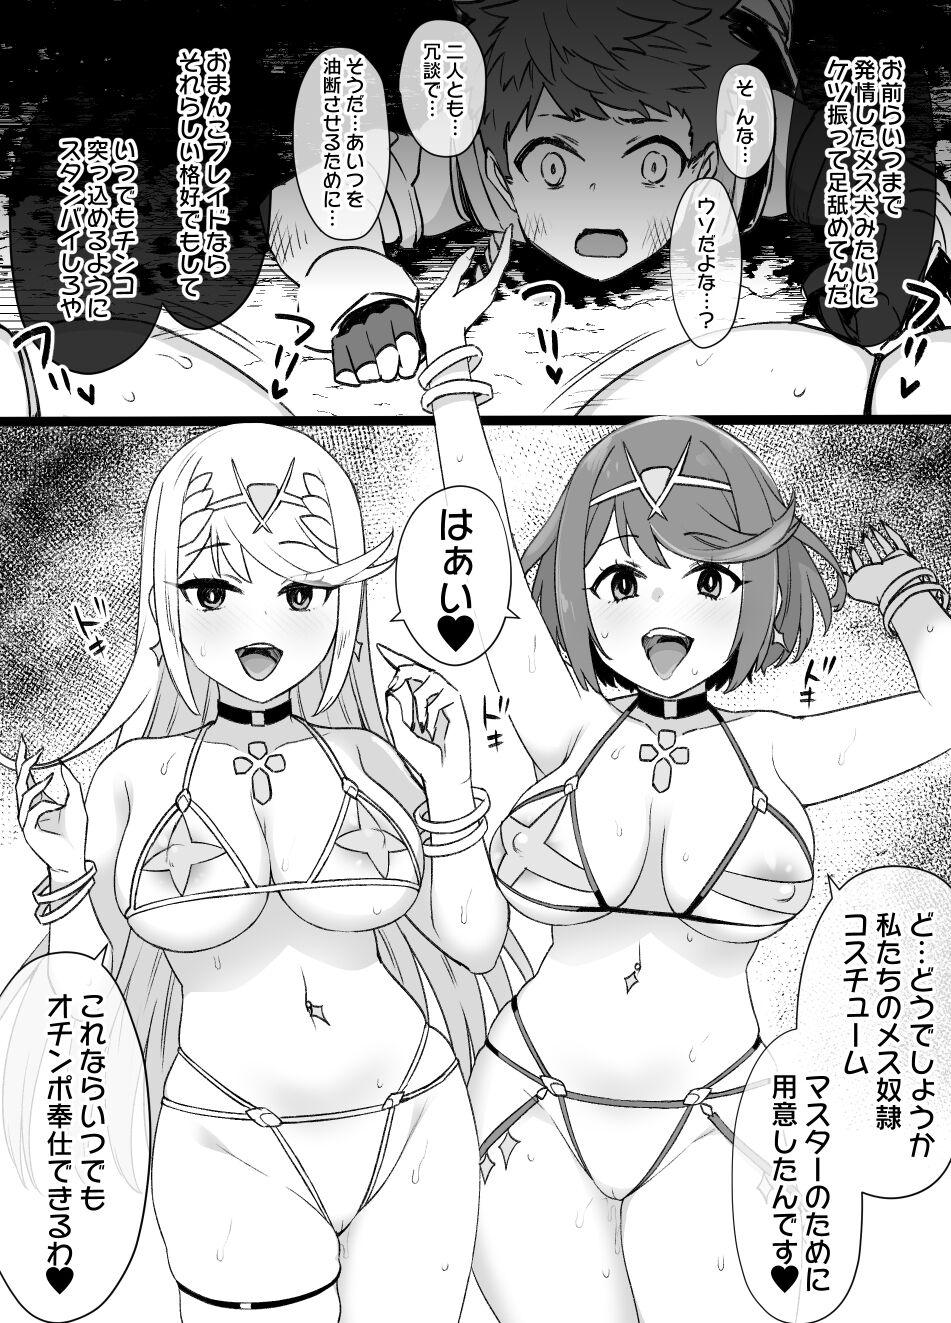 Homura & Hikari Sennou NTR Manga 14P 3